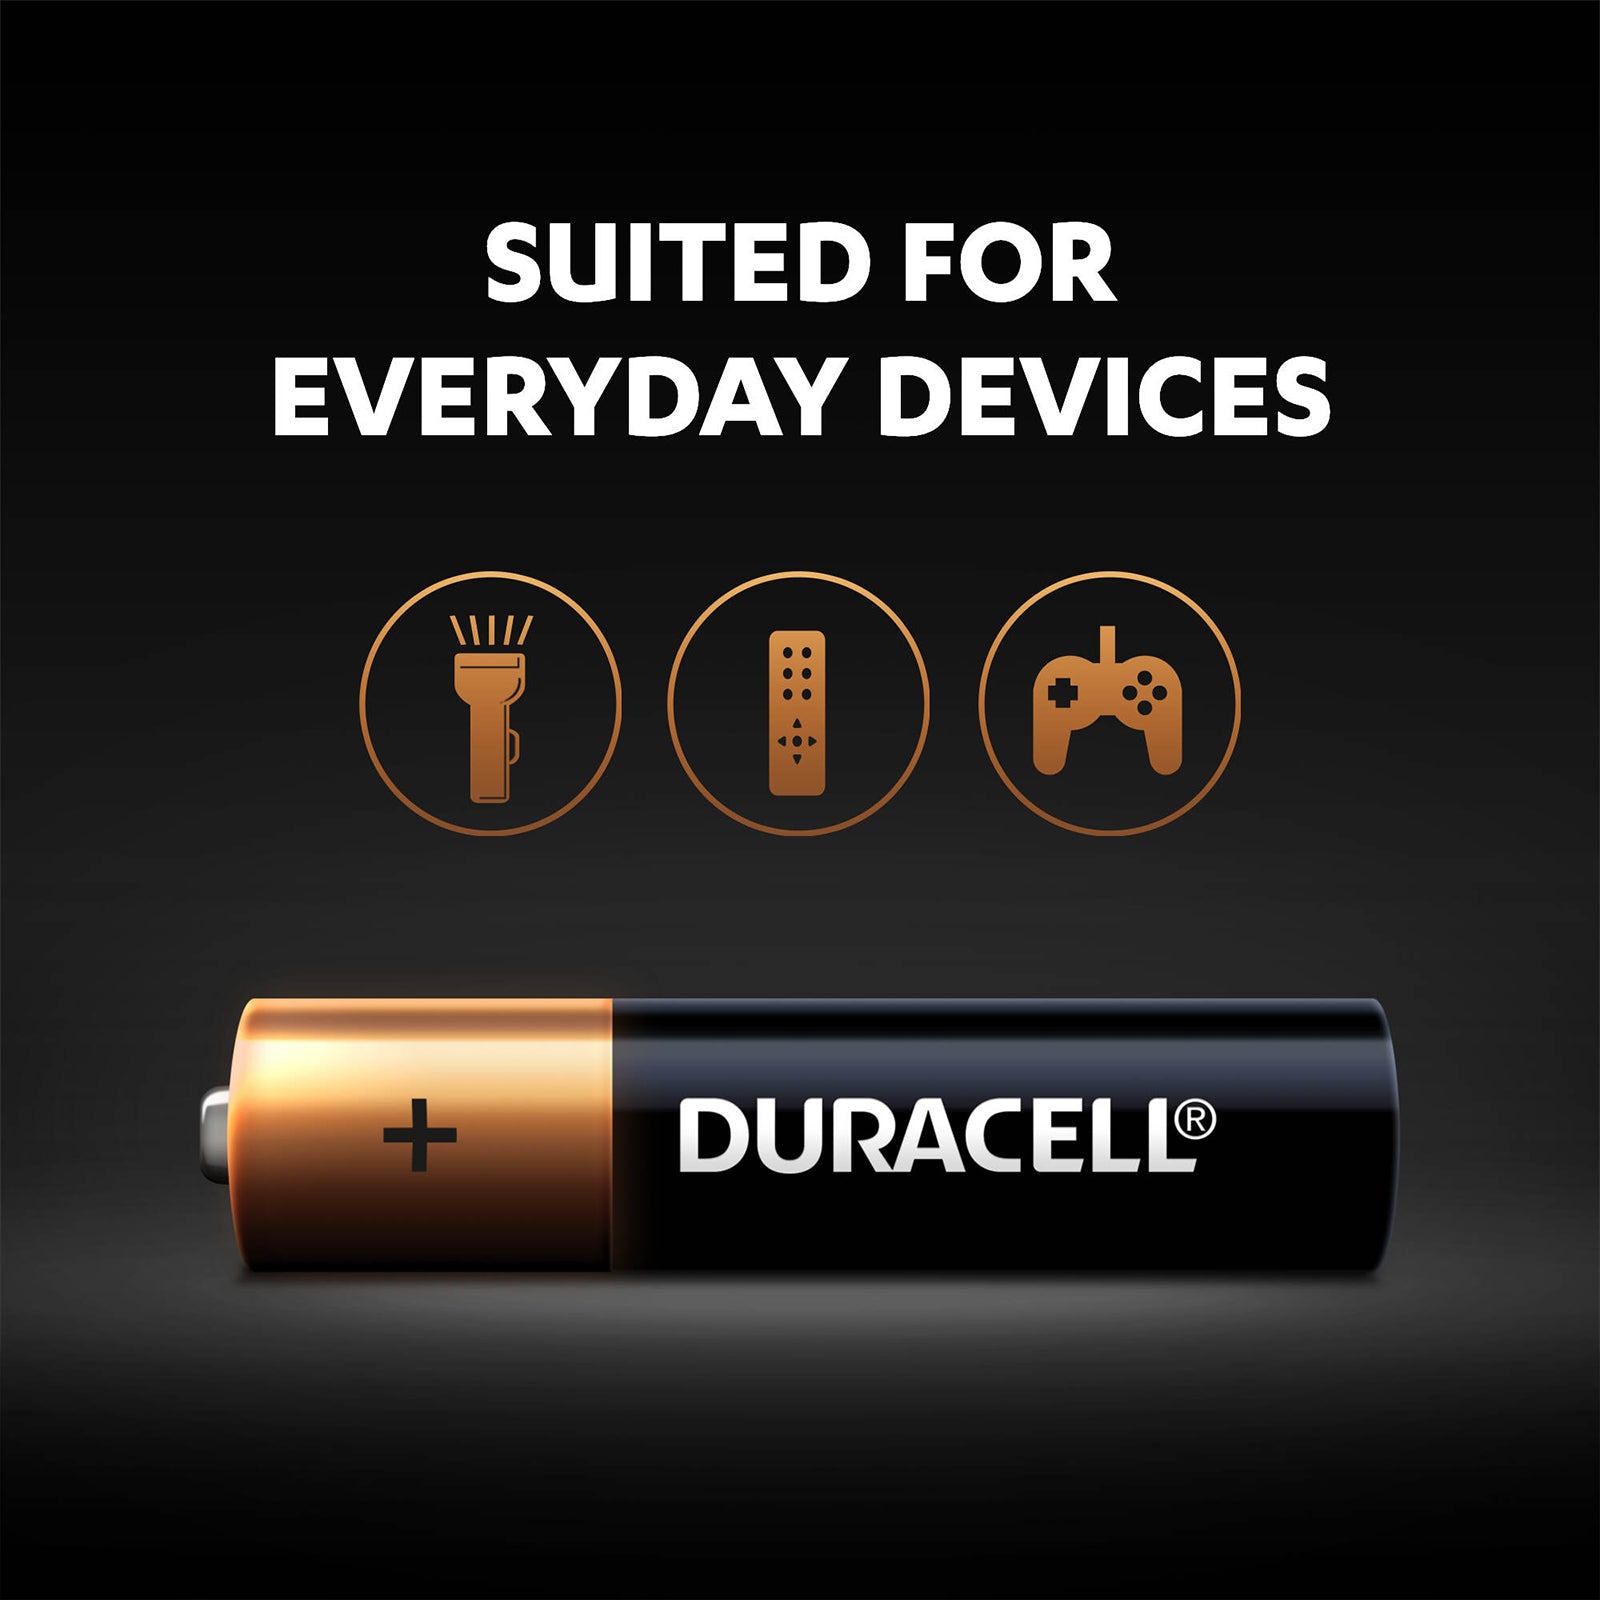 Batterie DURACELL AAA